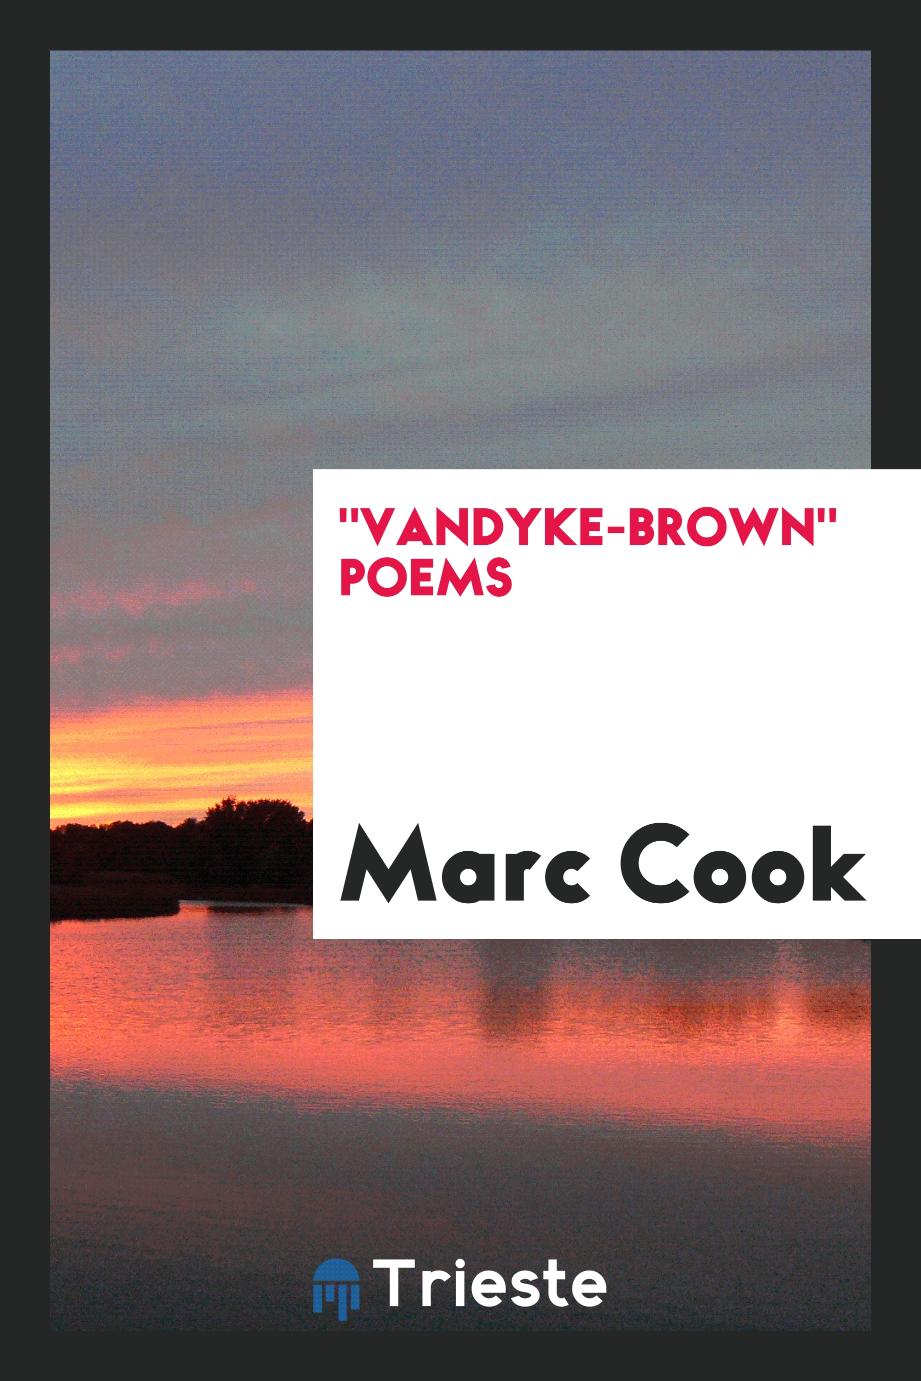 "Vandyke-Brown" poems